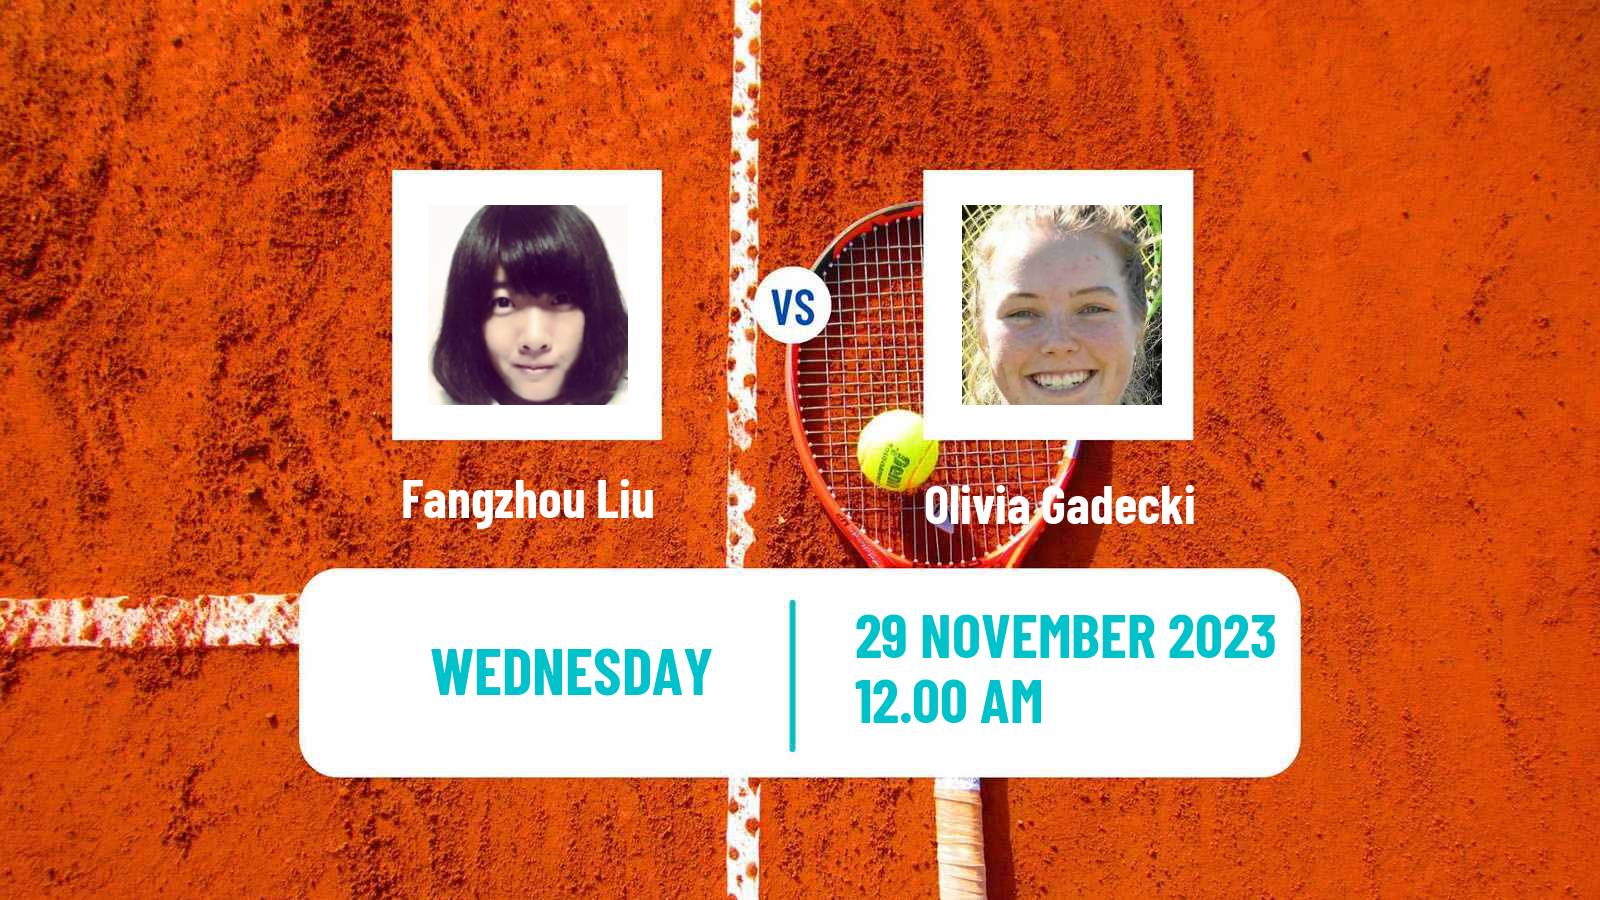 Tennis ITF W60 Gold Coast Women 2023 Fangzhou Liu - Olivia Gadecki